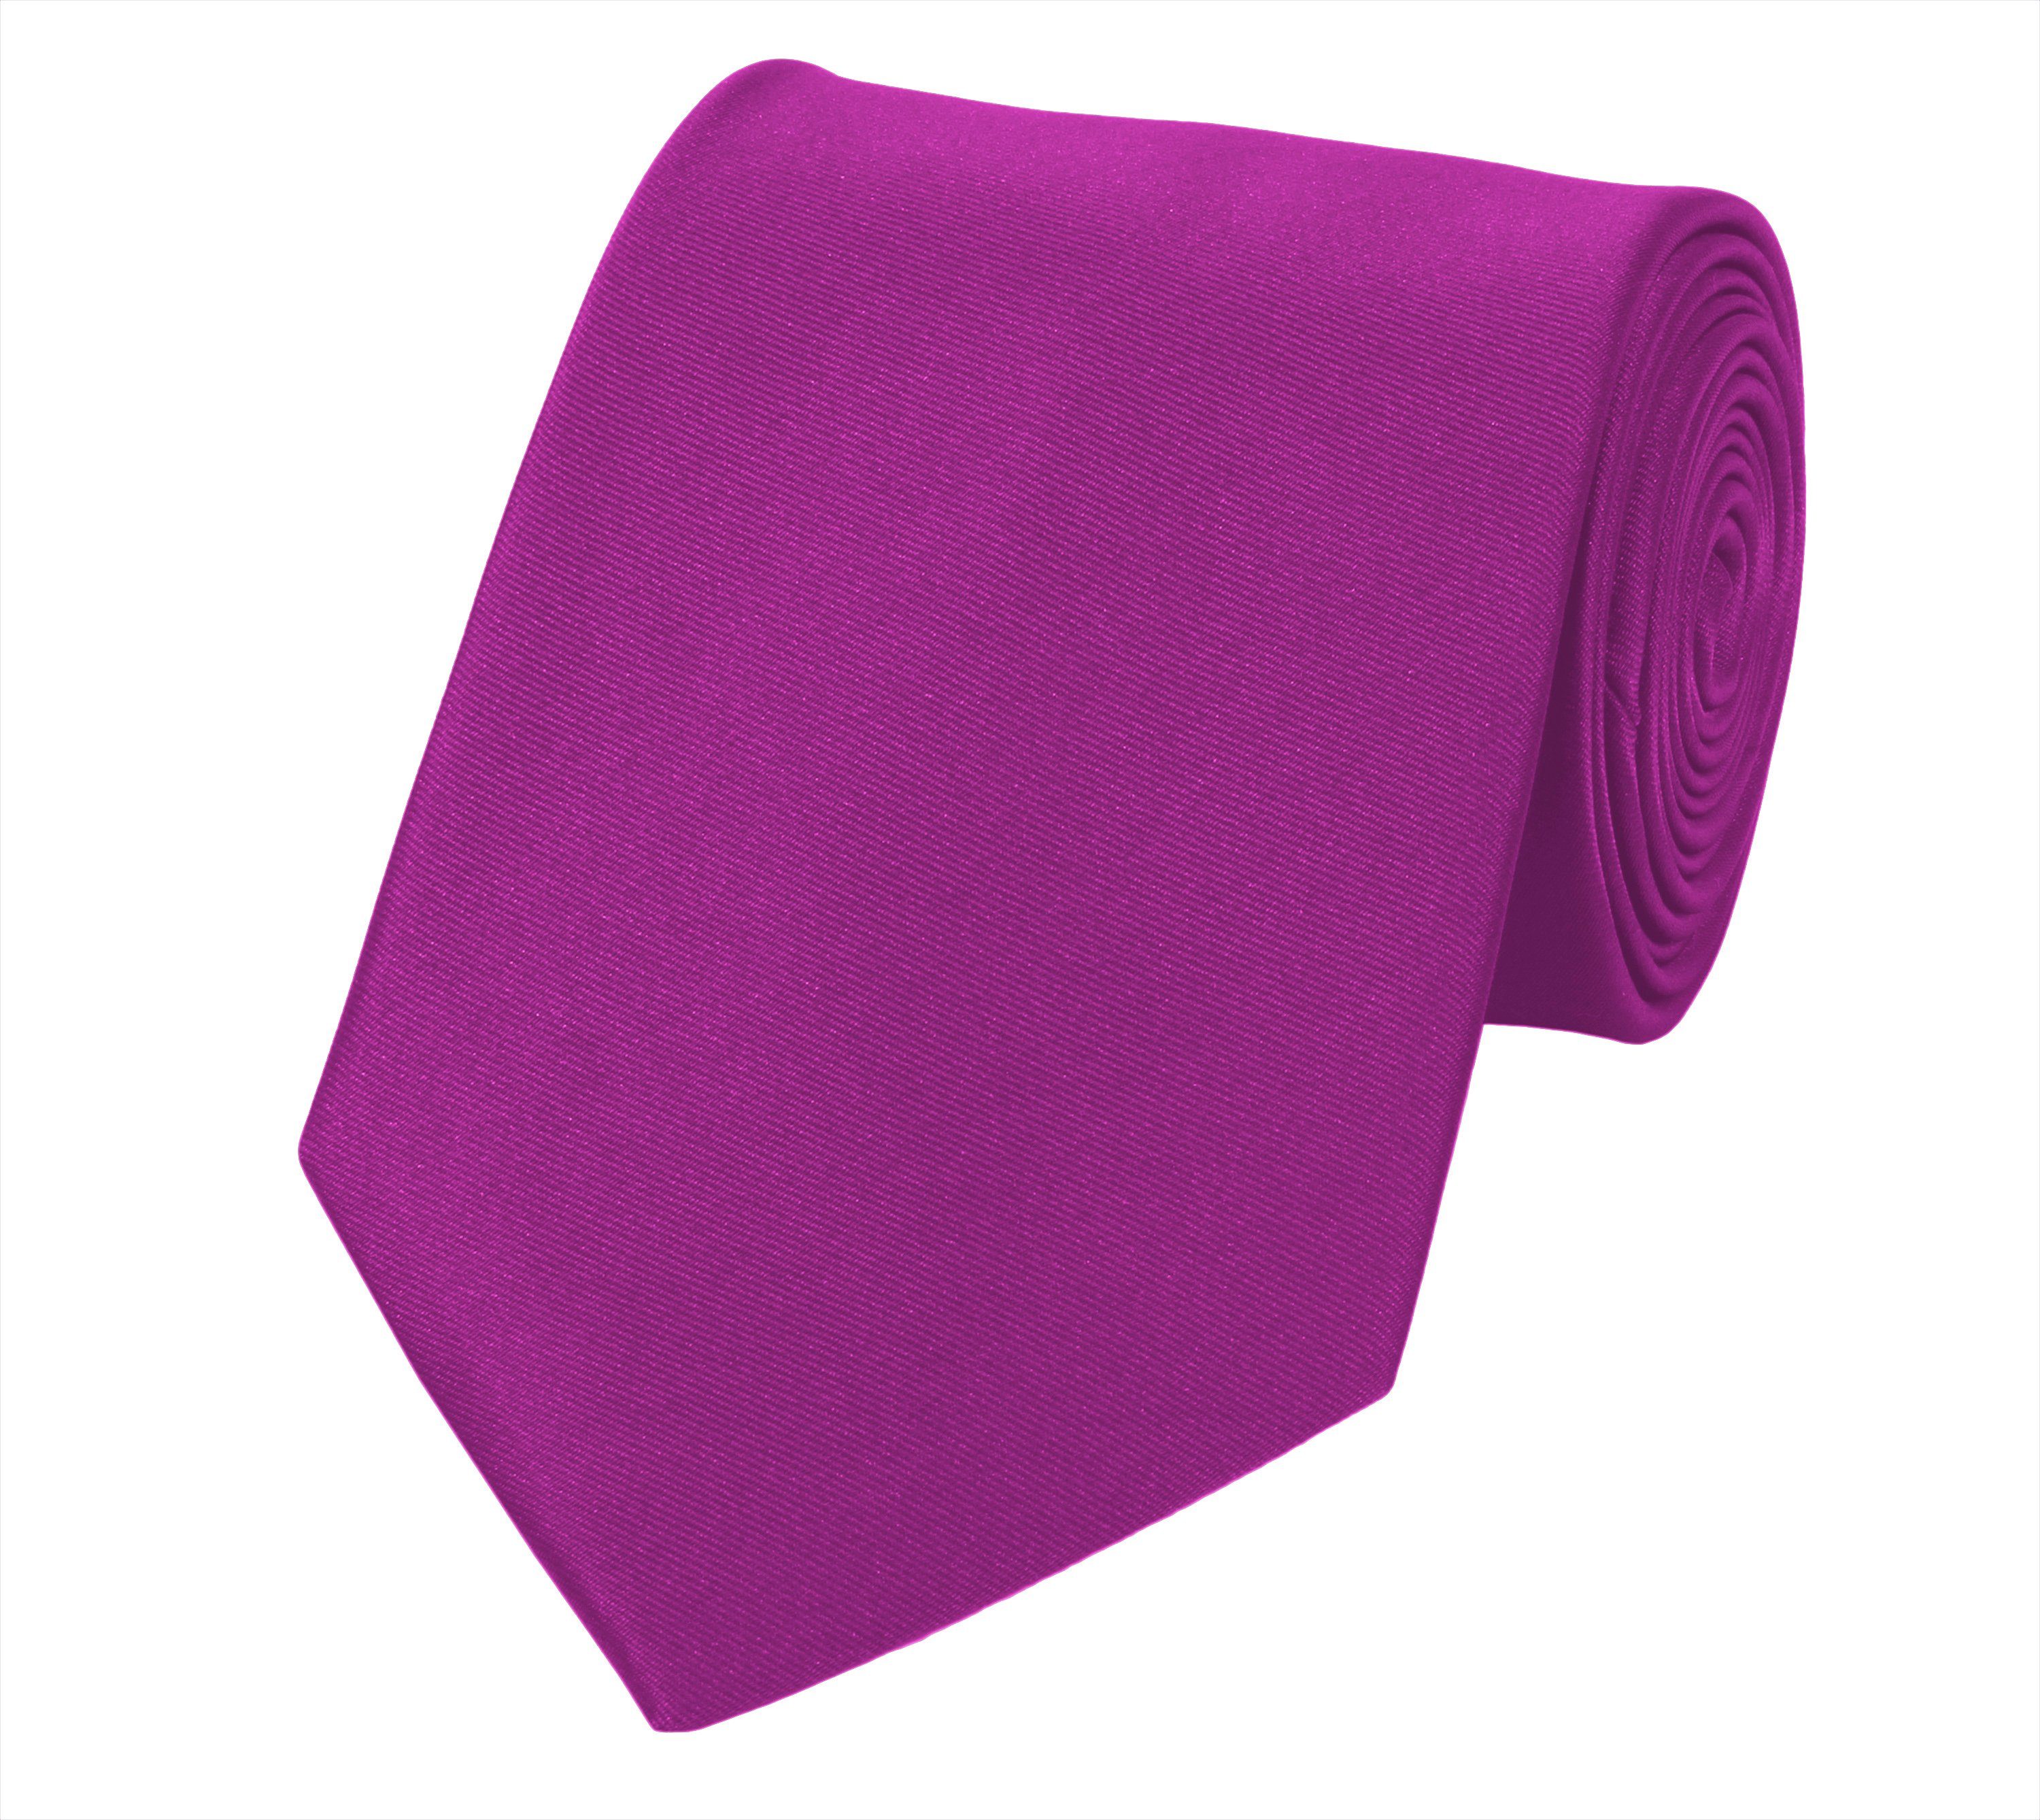 Fabio Farini Krawatte Herren Krawatte Rosa - verschiedene Rosa Männer Schlips in 8cm (ohne Box, Unifarben) Breit (8cm), Pink - Lilly Pink